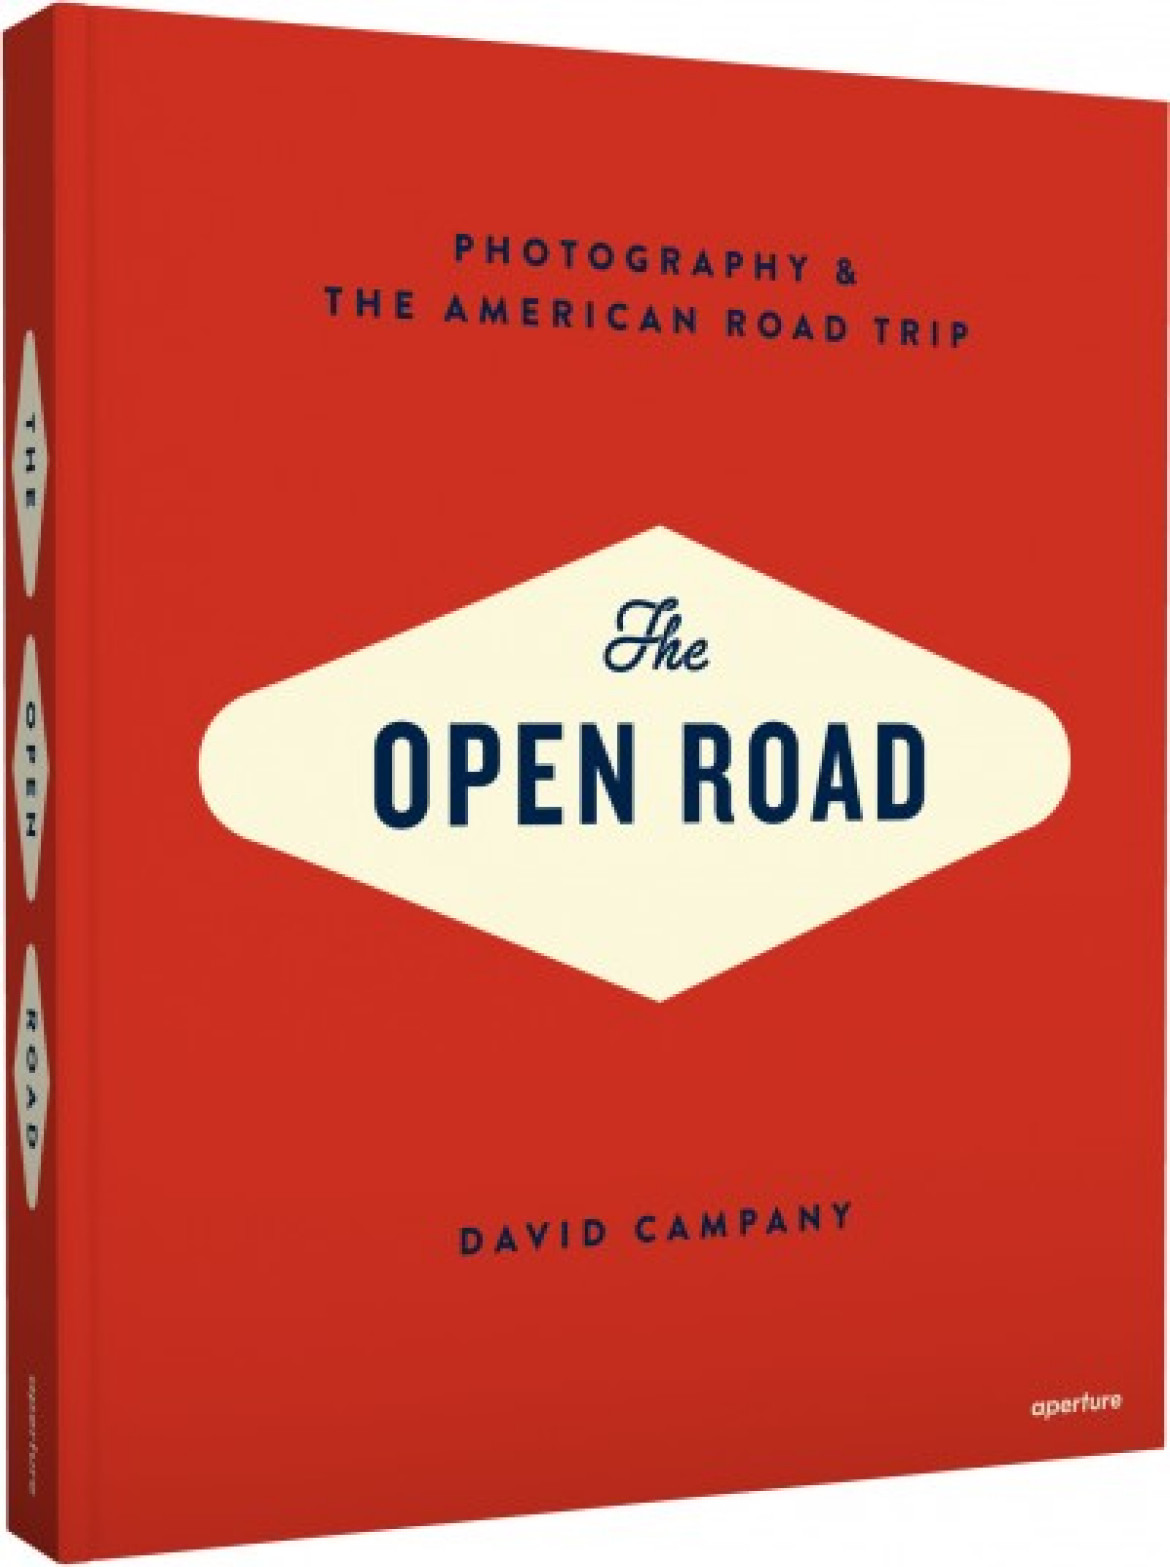 David Campany ”The Open Road”